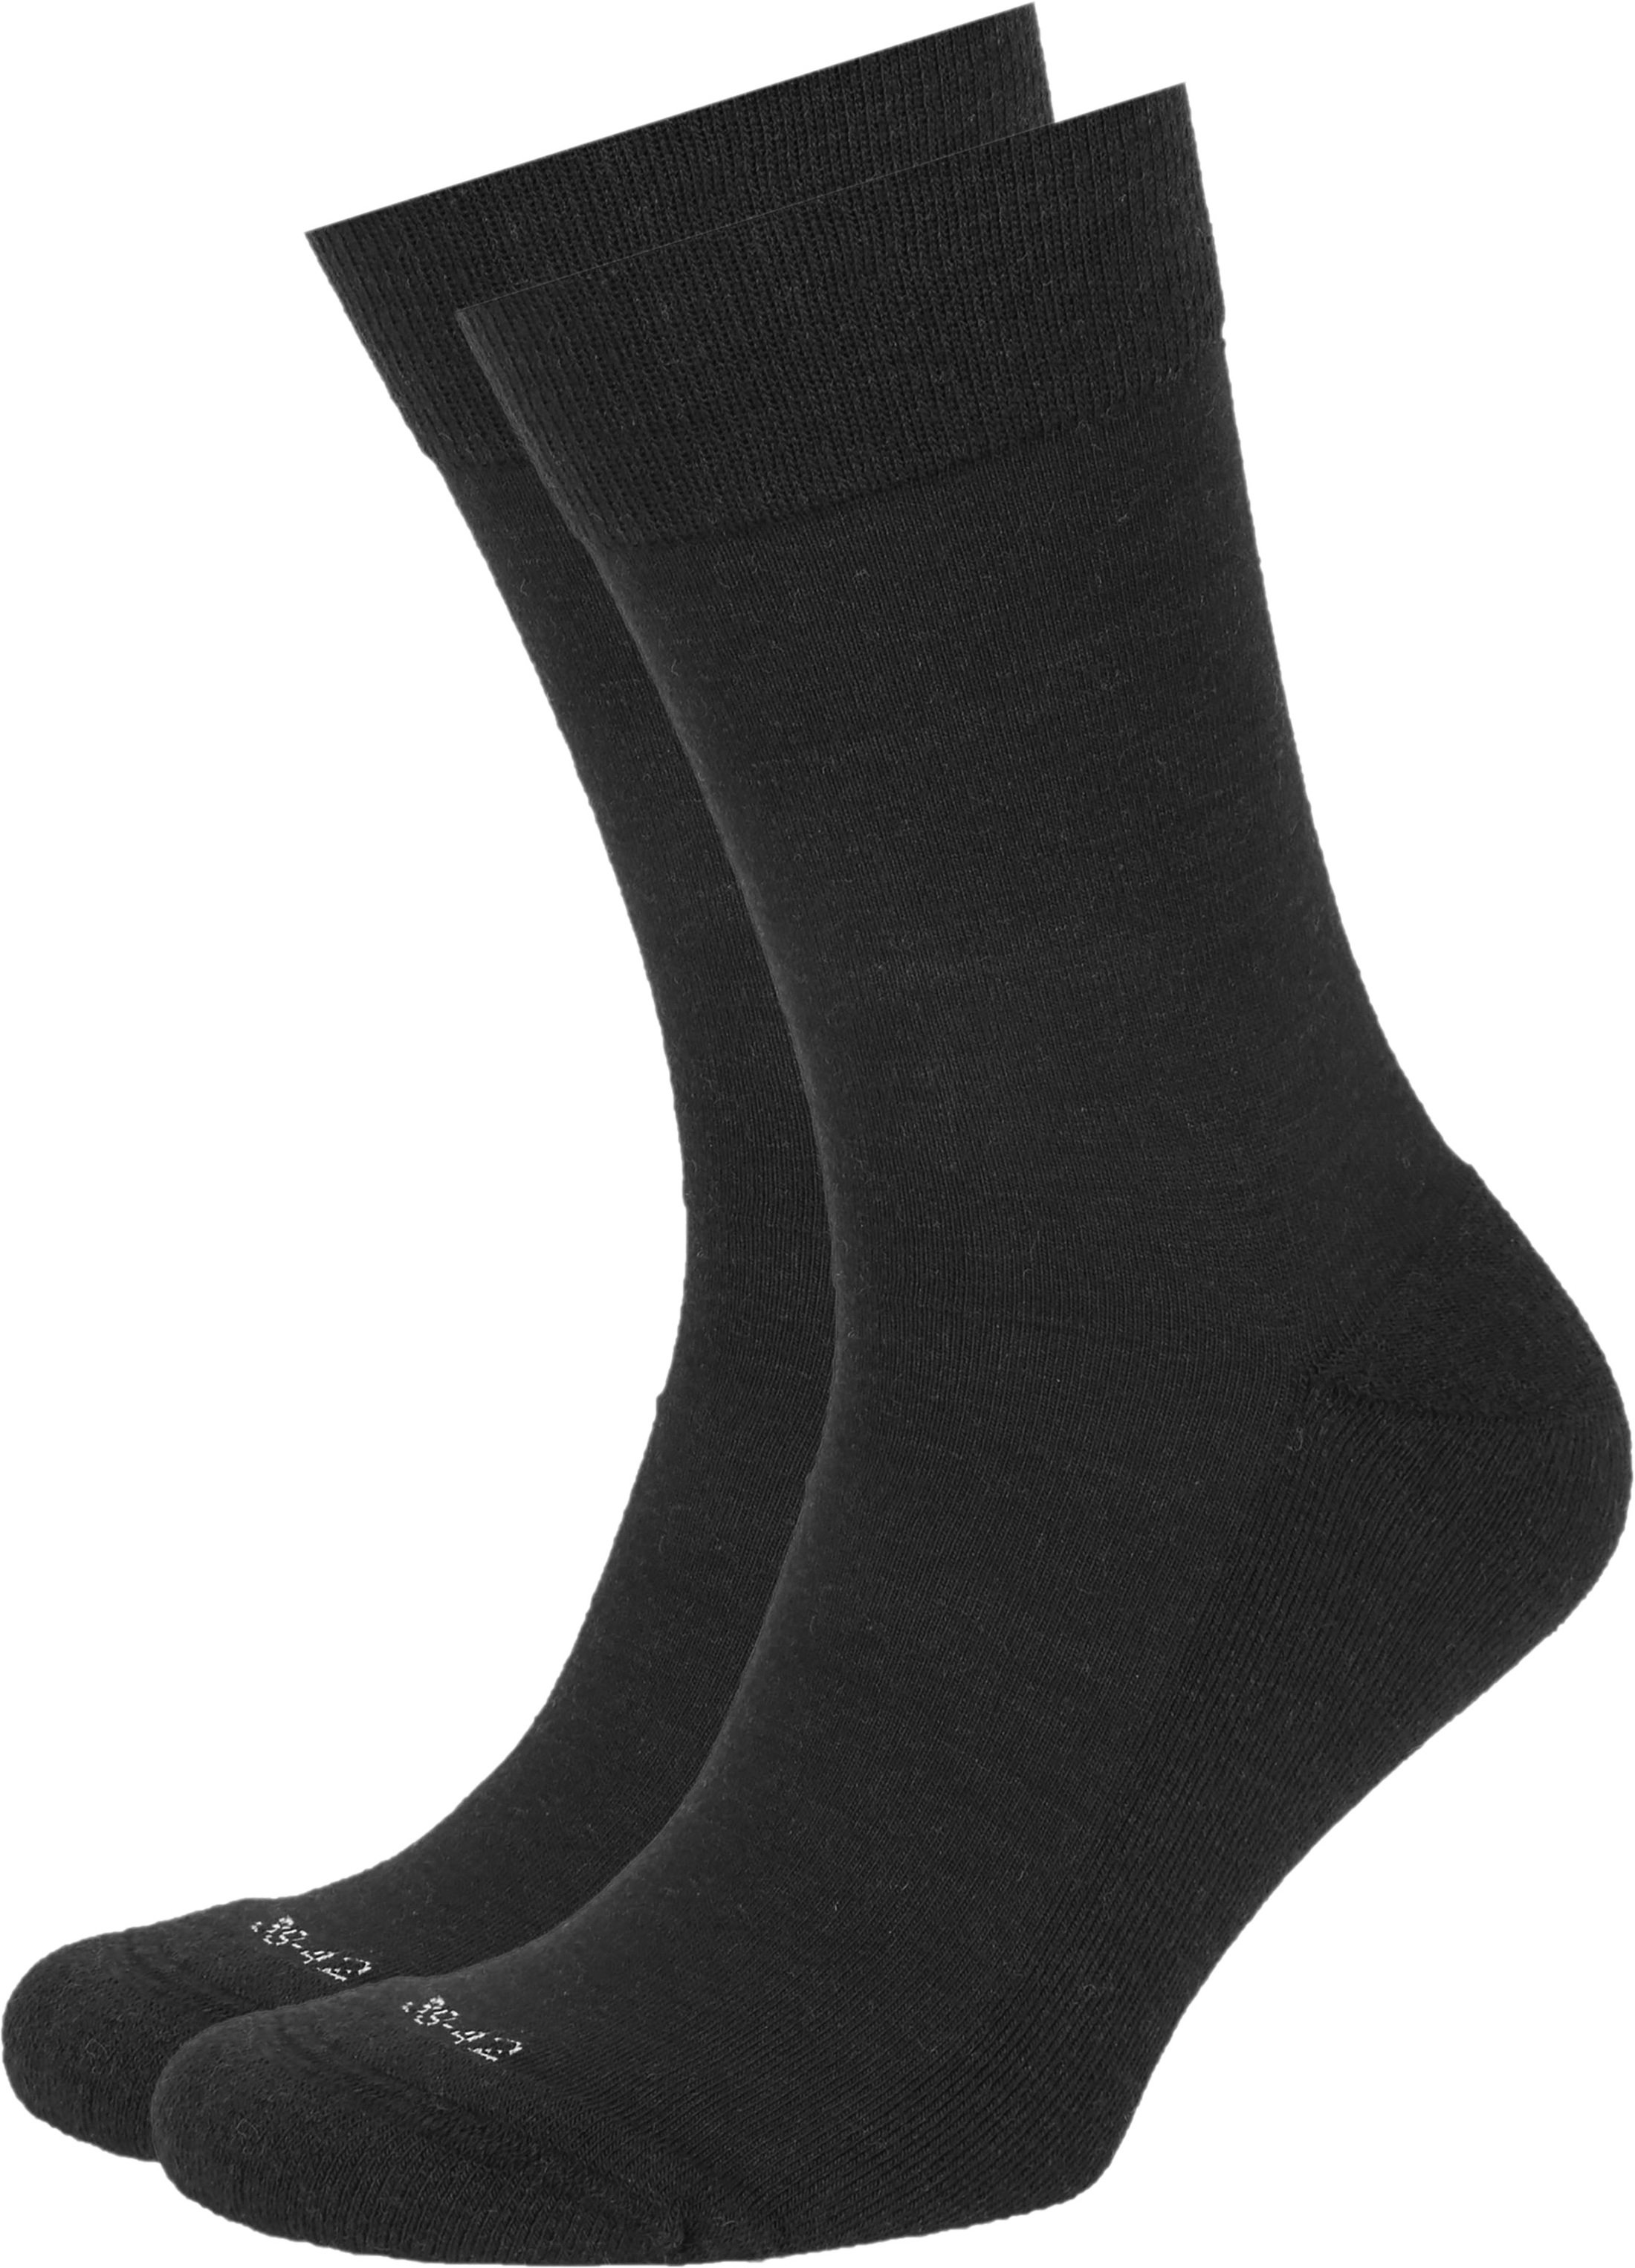 Merino Socks Black 2-Pack